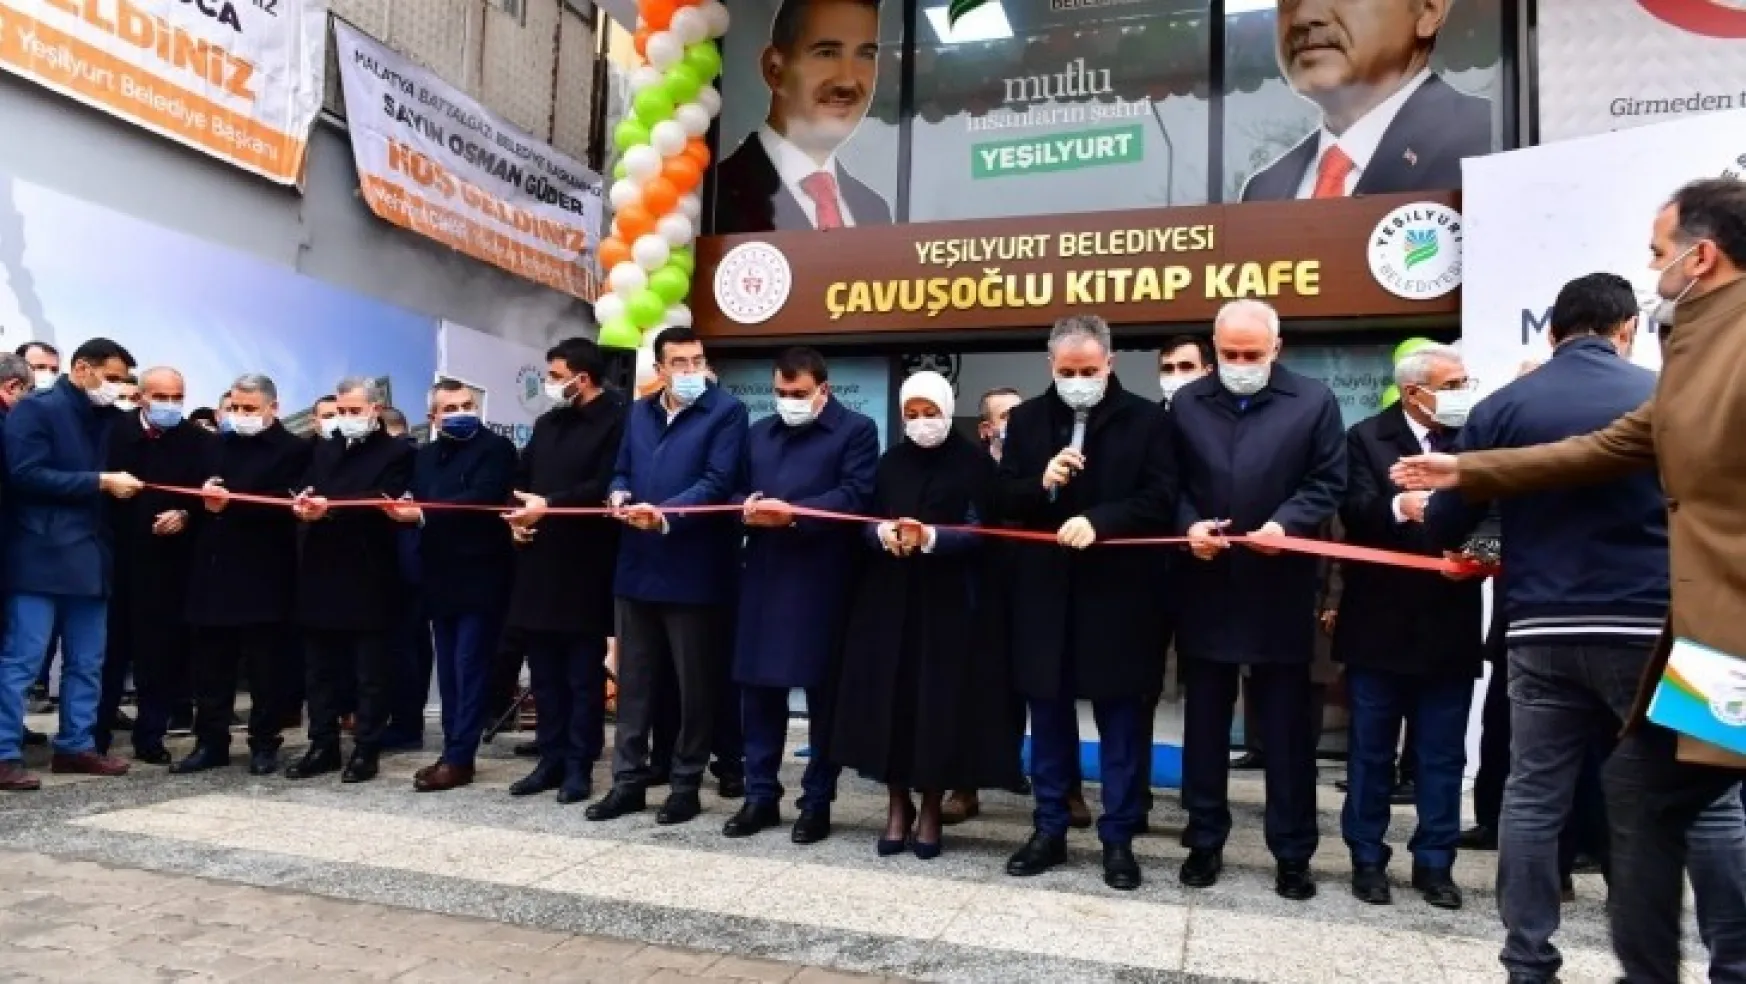 Yeşilyurt Belediyesi, Eğitim Yatırımlarına Çavuşoğlu Kitap Kafe'yi de Ekledi